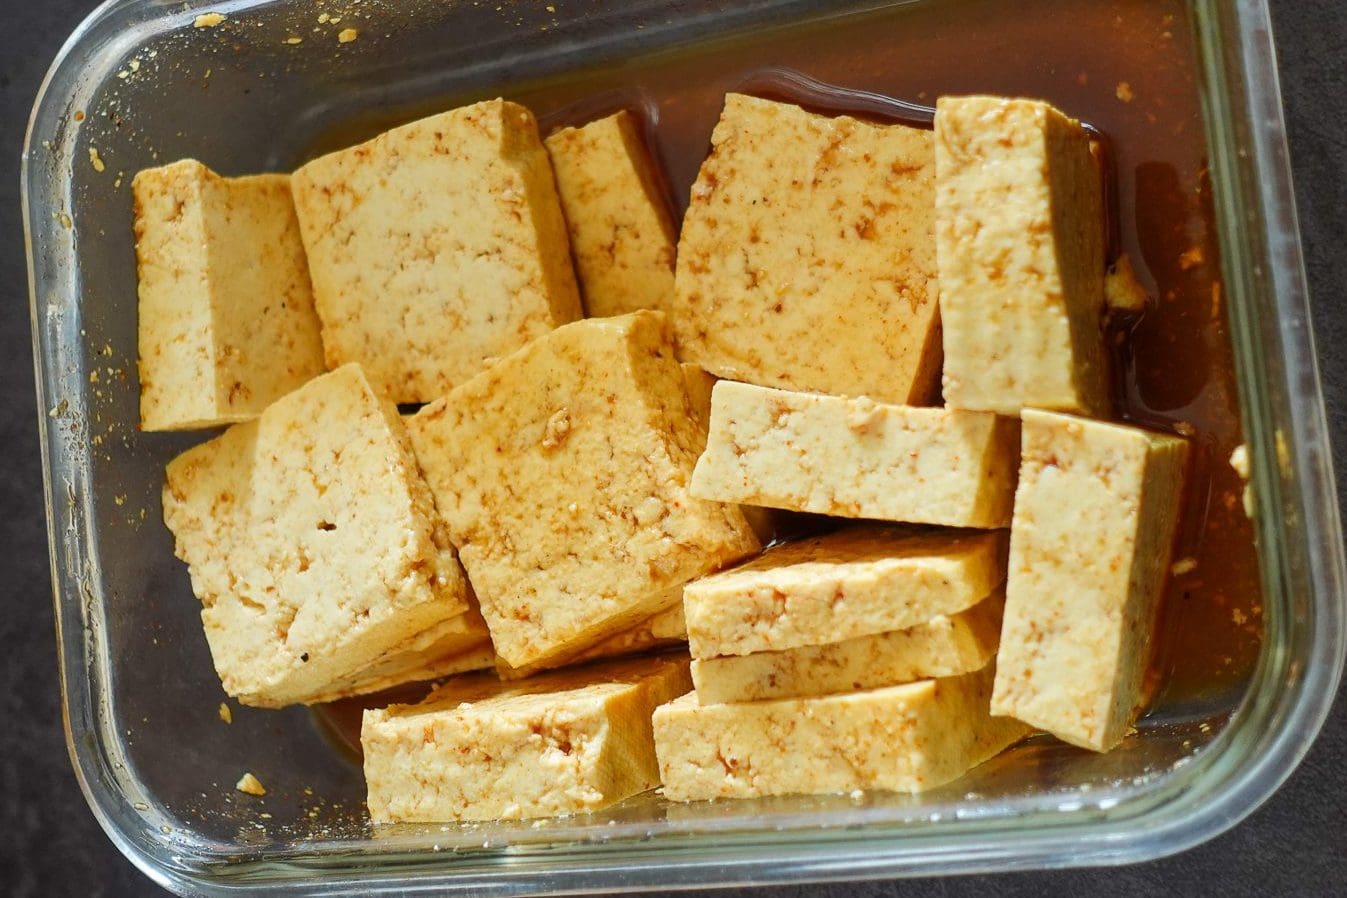 Marinate the tofu